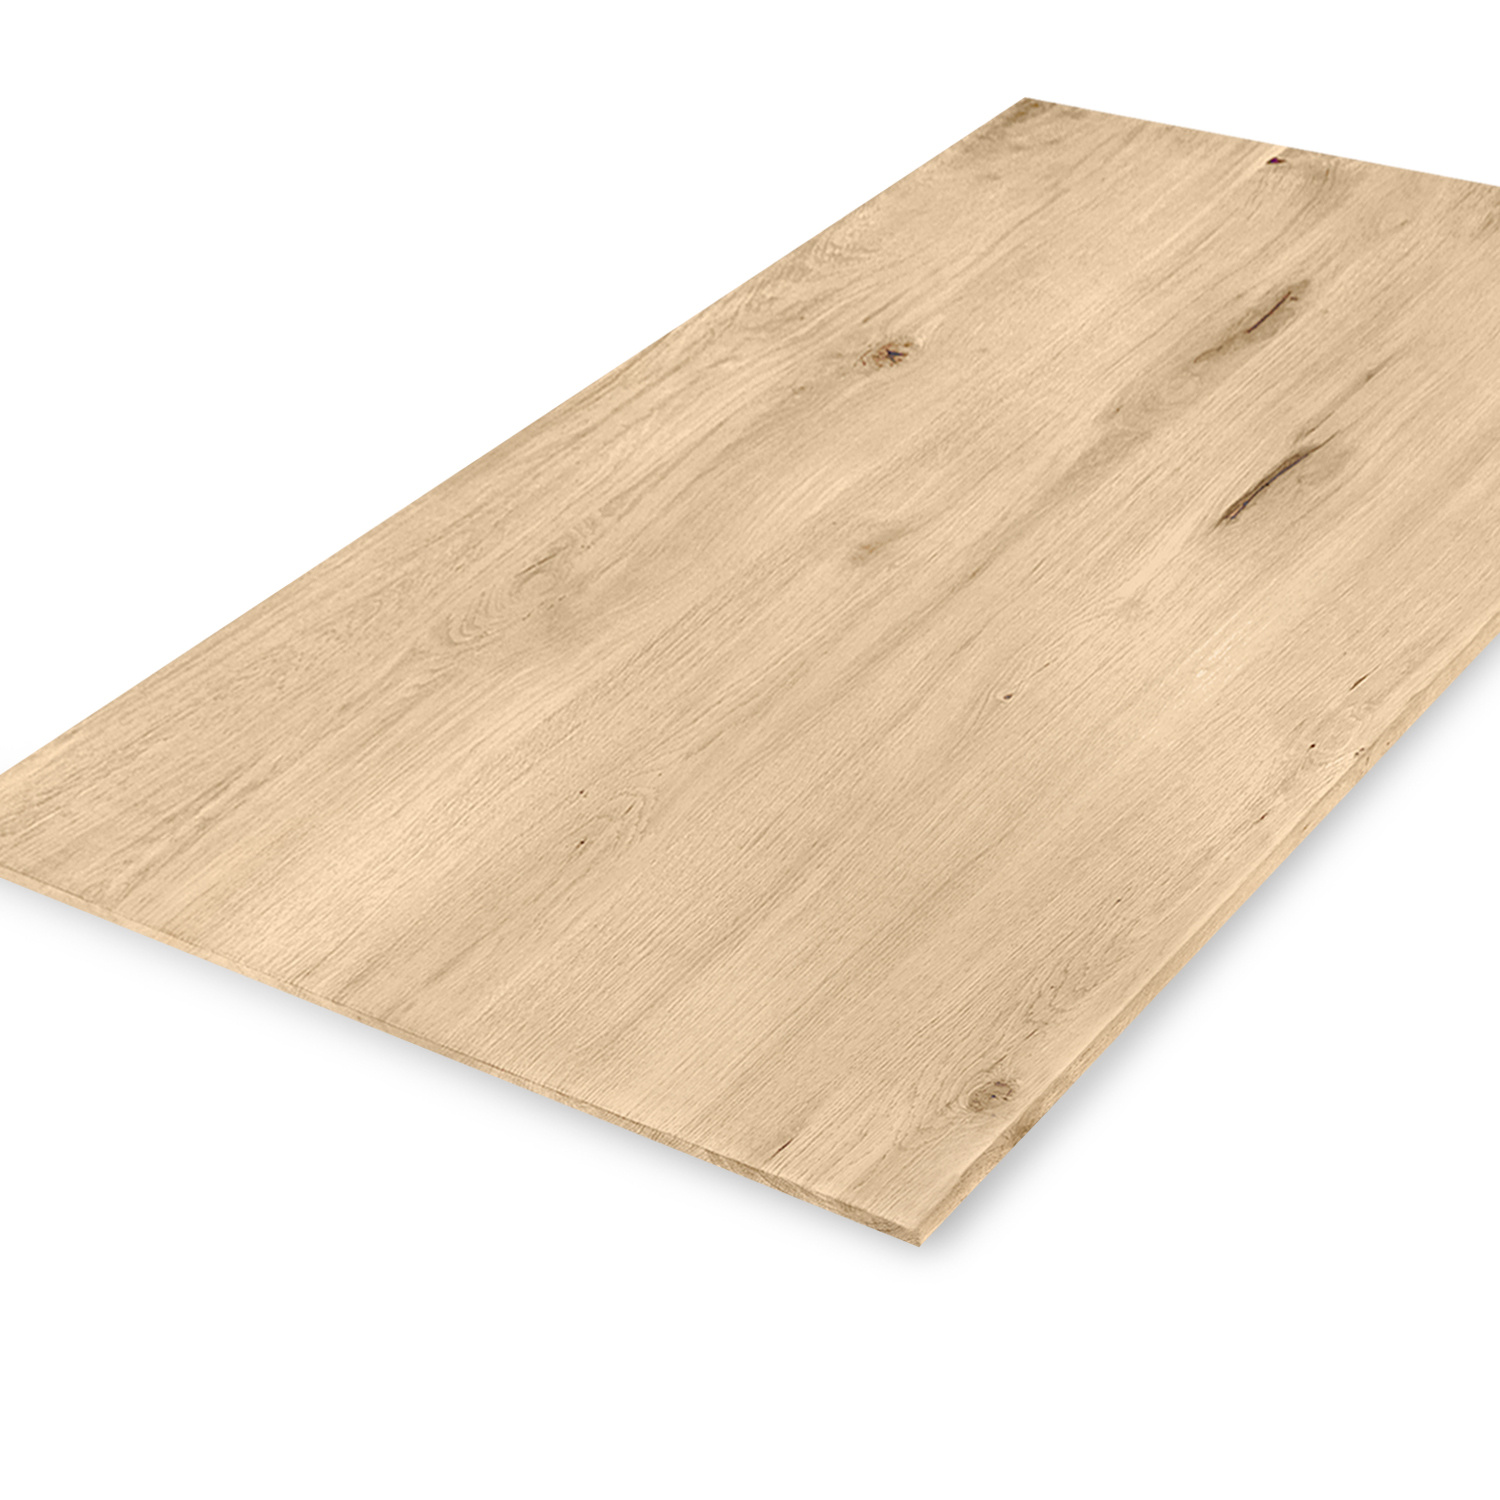  Eiken tafelblad verjongd op maat - 3 cm dik (1-laag) - extra rustiek Europees eikenhout - met extra brede lamellen (circa 14-20 cm) - verlijmd kd 8-12% - 40-117x80-247 cm